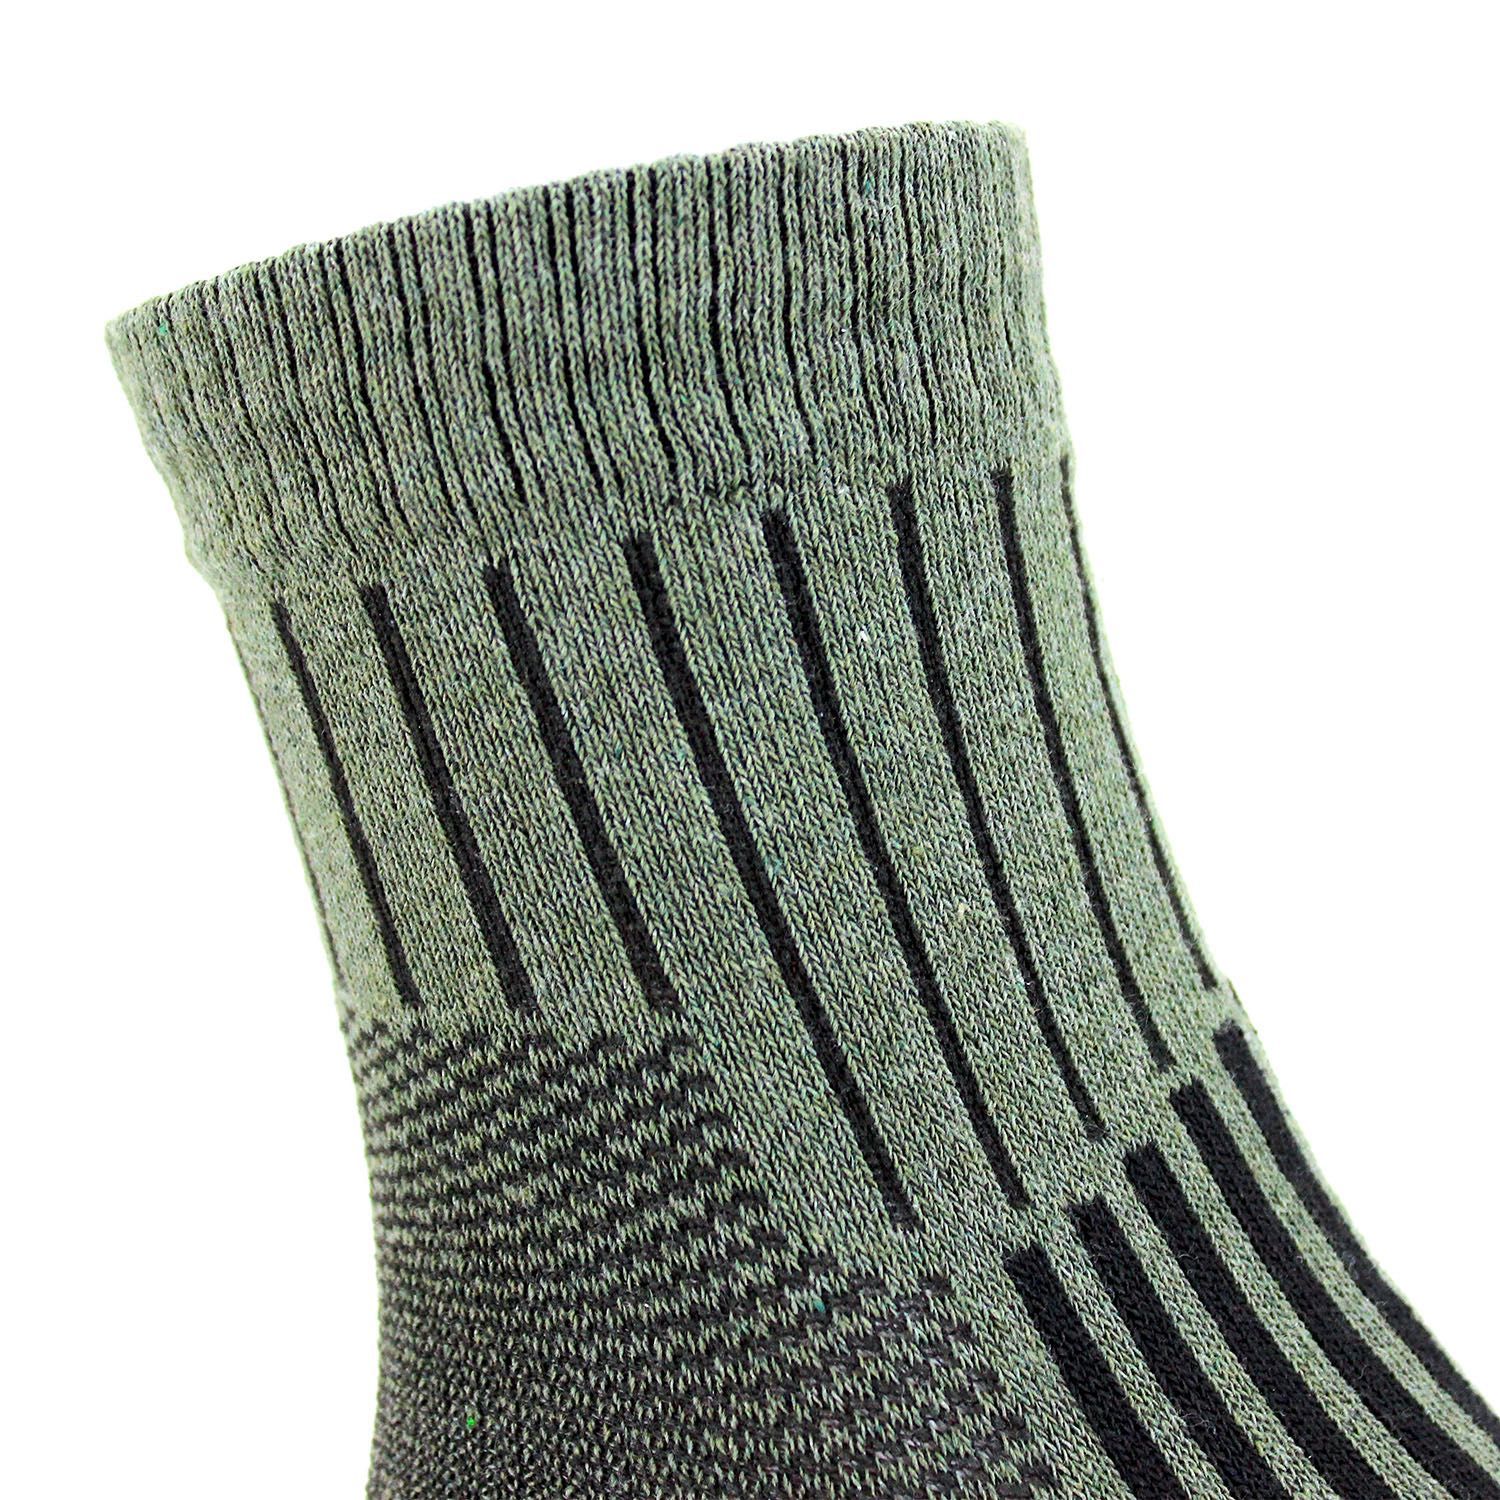 Комплект літні тактичні шкарпетки 5 пар 41-45 хакі олива армійські